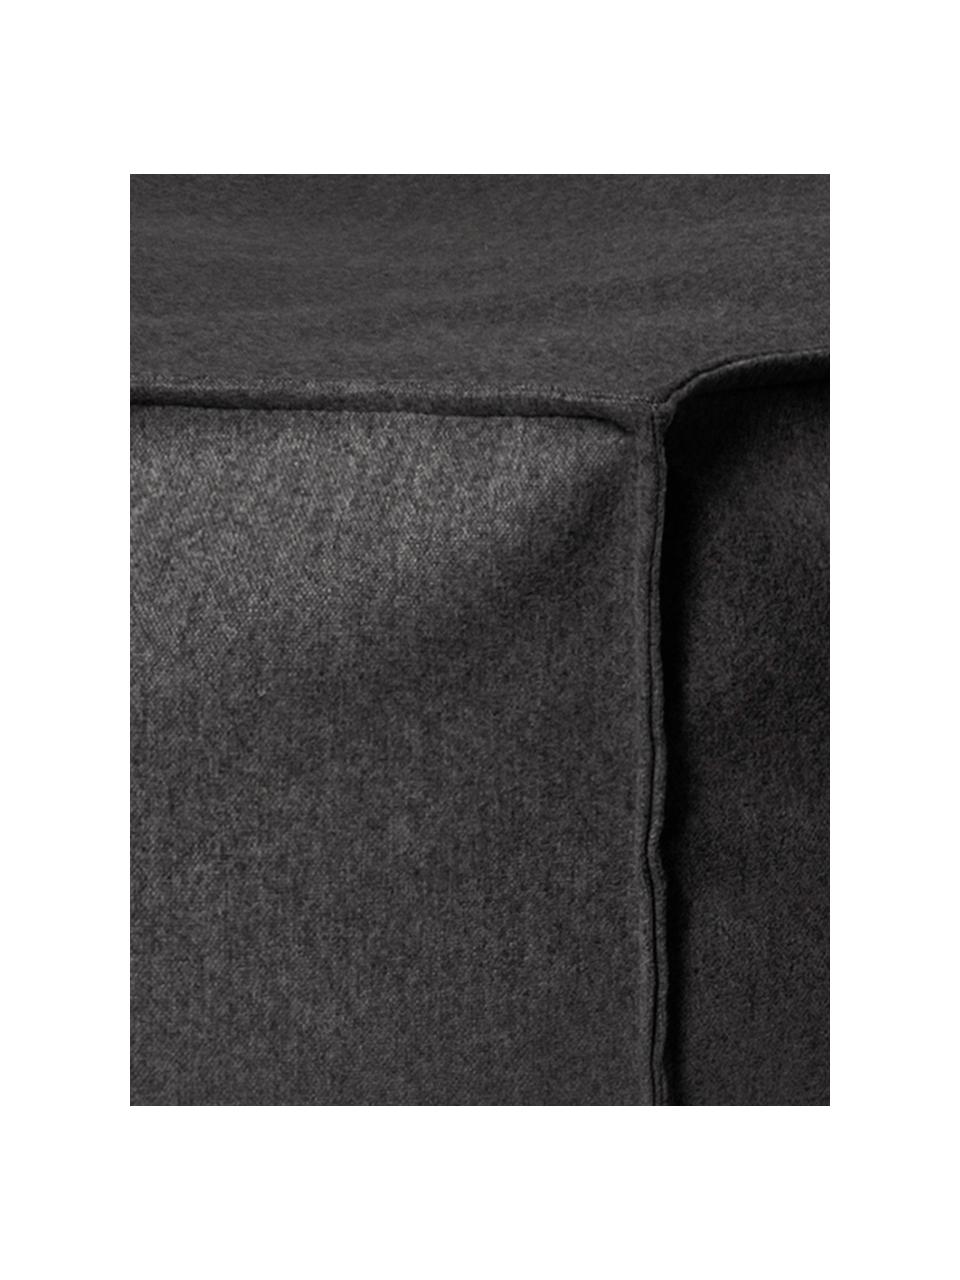 Filz-Sitzsack Loft Felt, Bezug: Polyester, Anthrazit, 60 x 45 cm